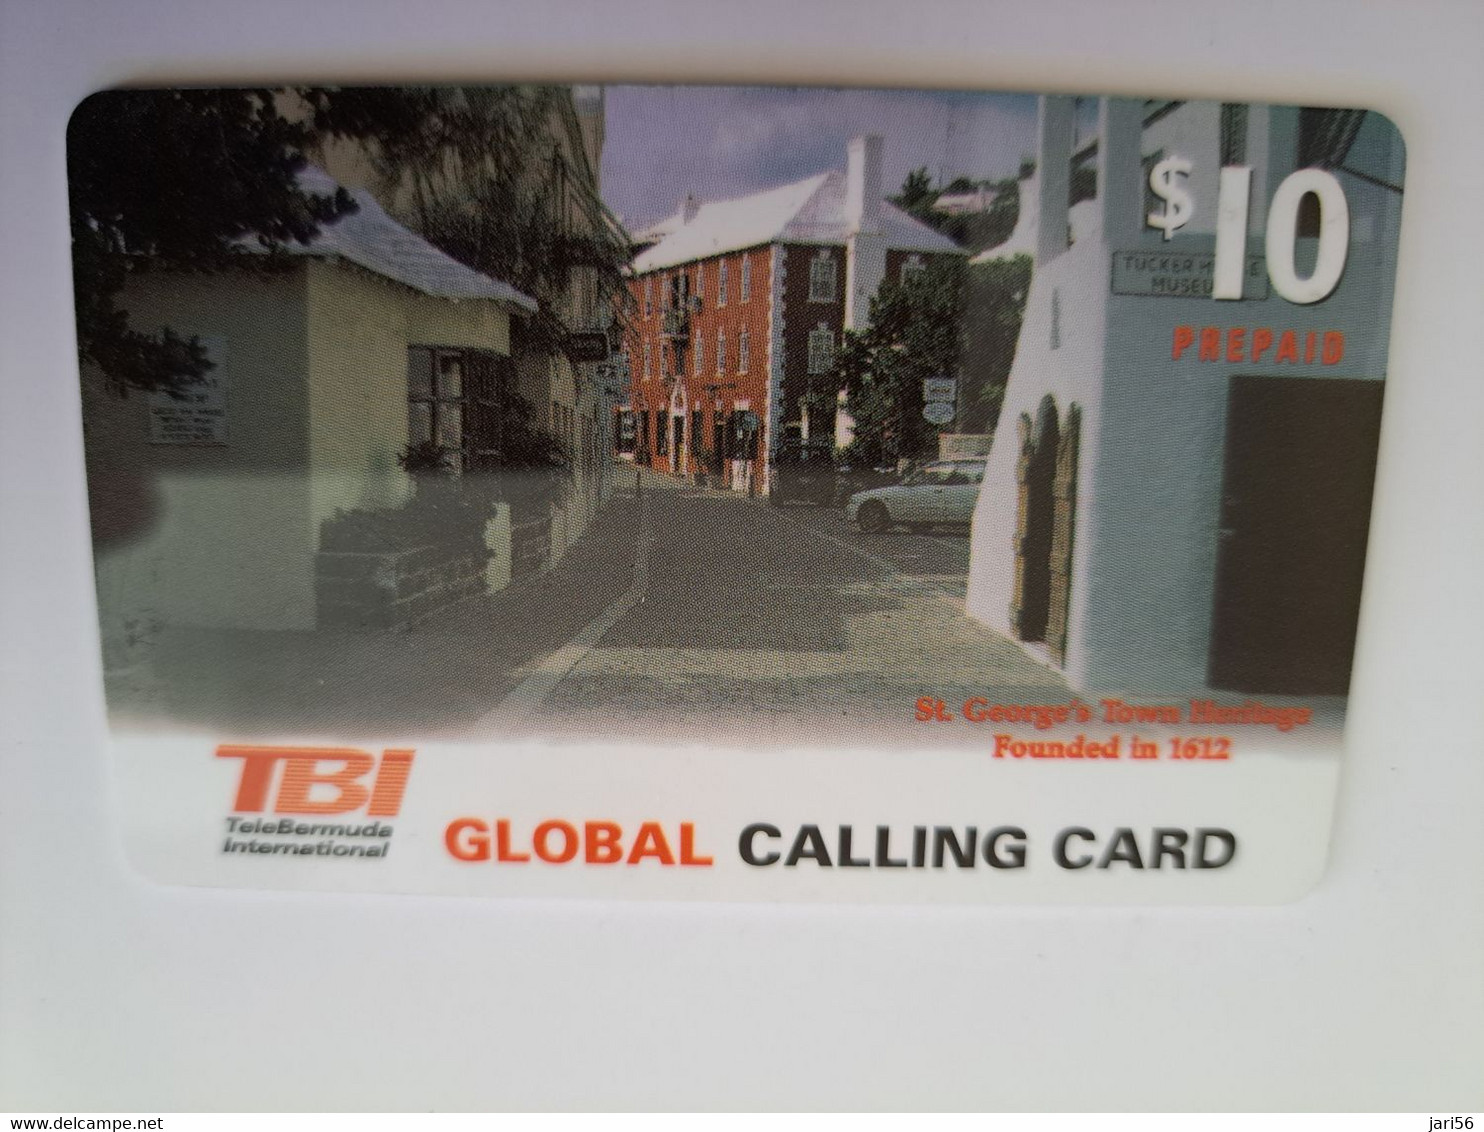 BERMUDA  $ 10,-  TBI / GEORGES TOWN  BERMUDA  / WHITE   VALUE   /   PREPAID CARD  Fine USED  **11312** - Bermudes